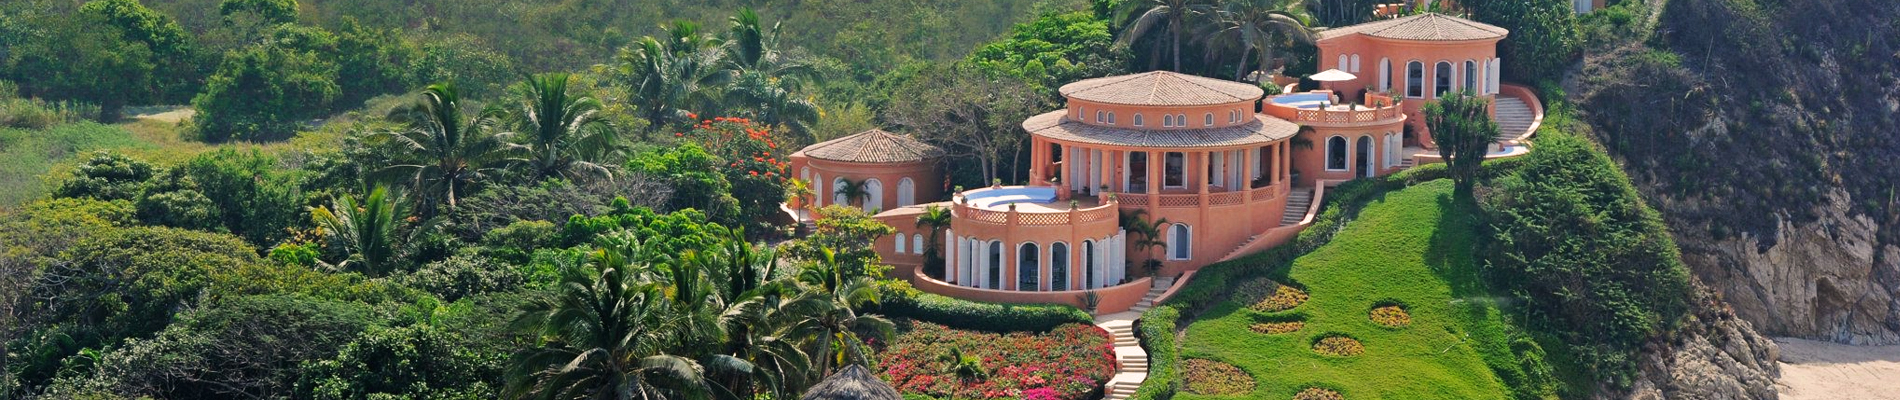 Cuixmala private villa on Pacific Coast